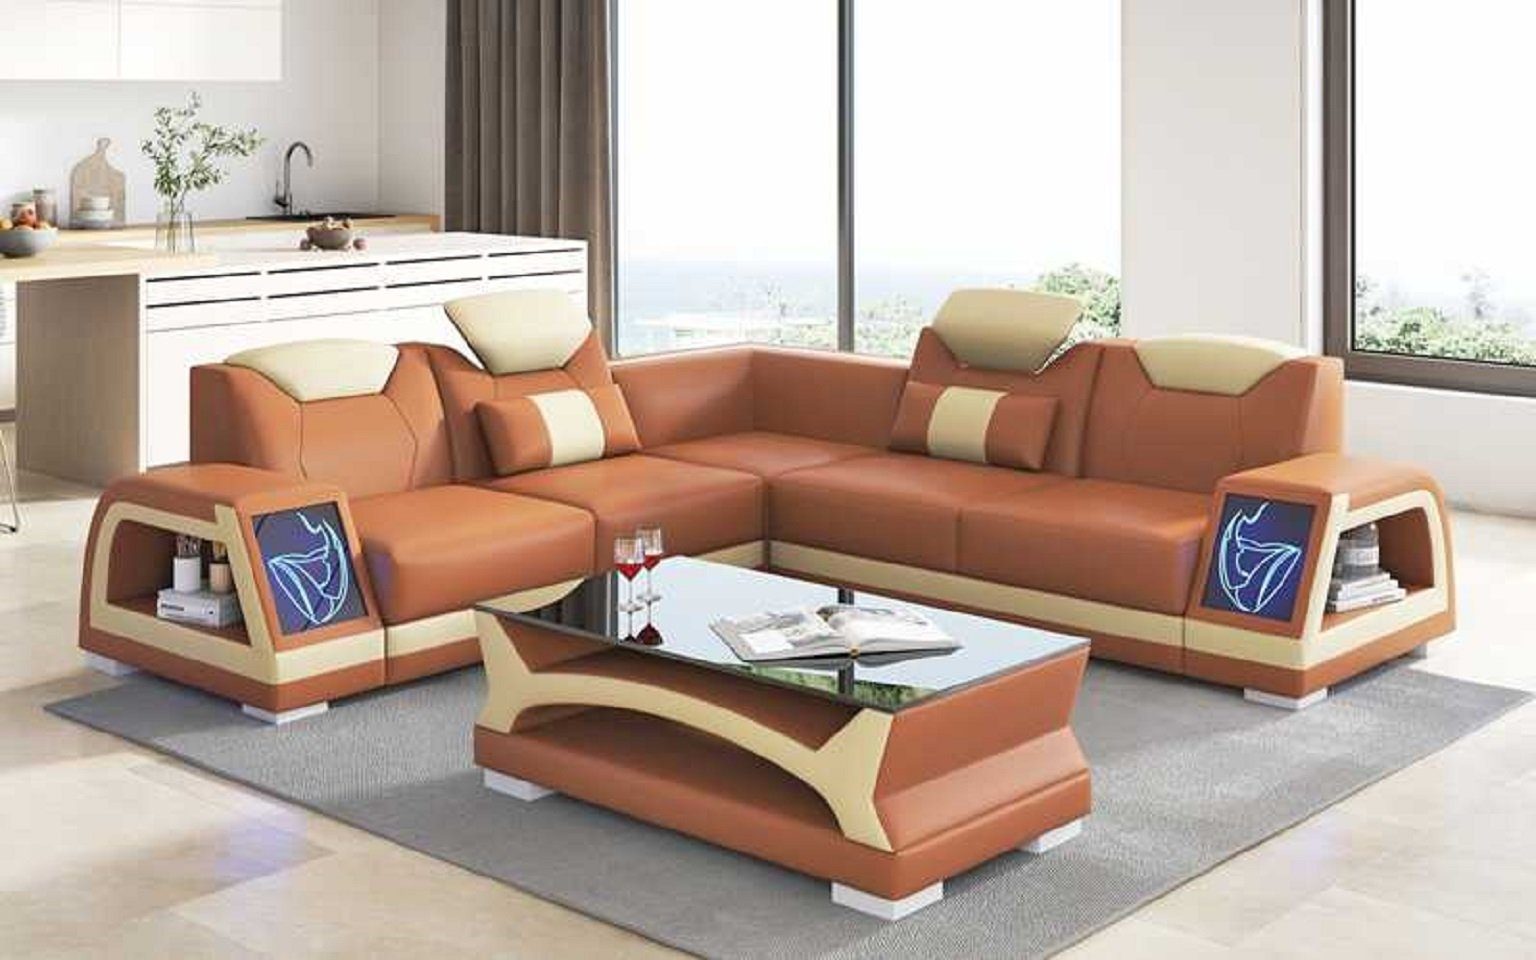 JVmoebel Ecksofa Couchen, Teile, 3 Ecksofa Europe L Braun Design Made Form Couch Modern Luxus in Sofa Kunstleder